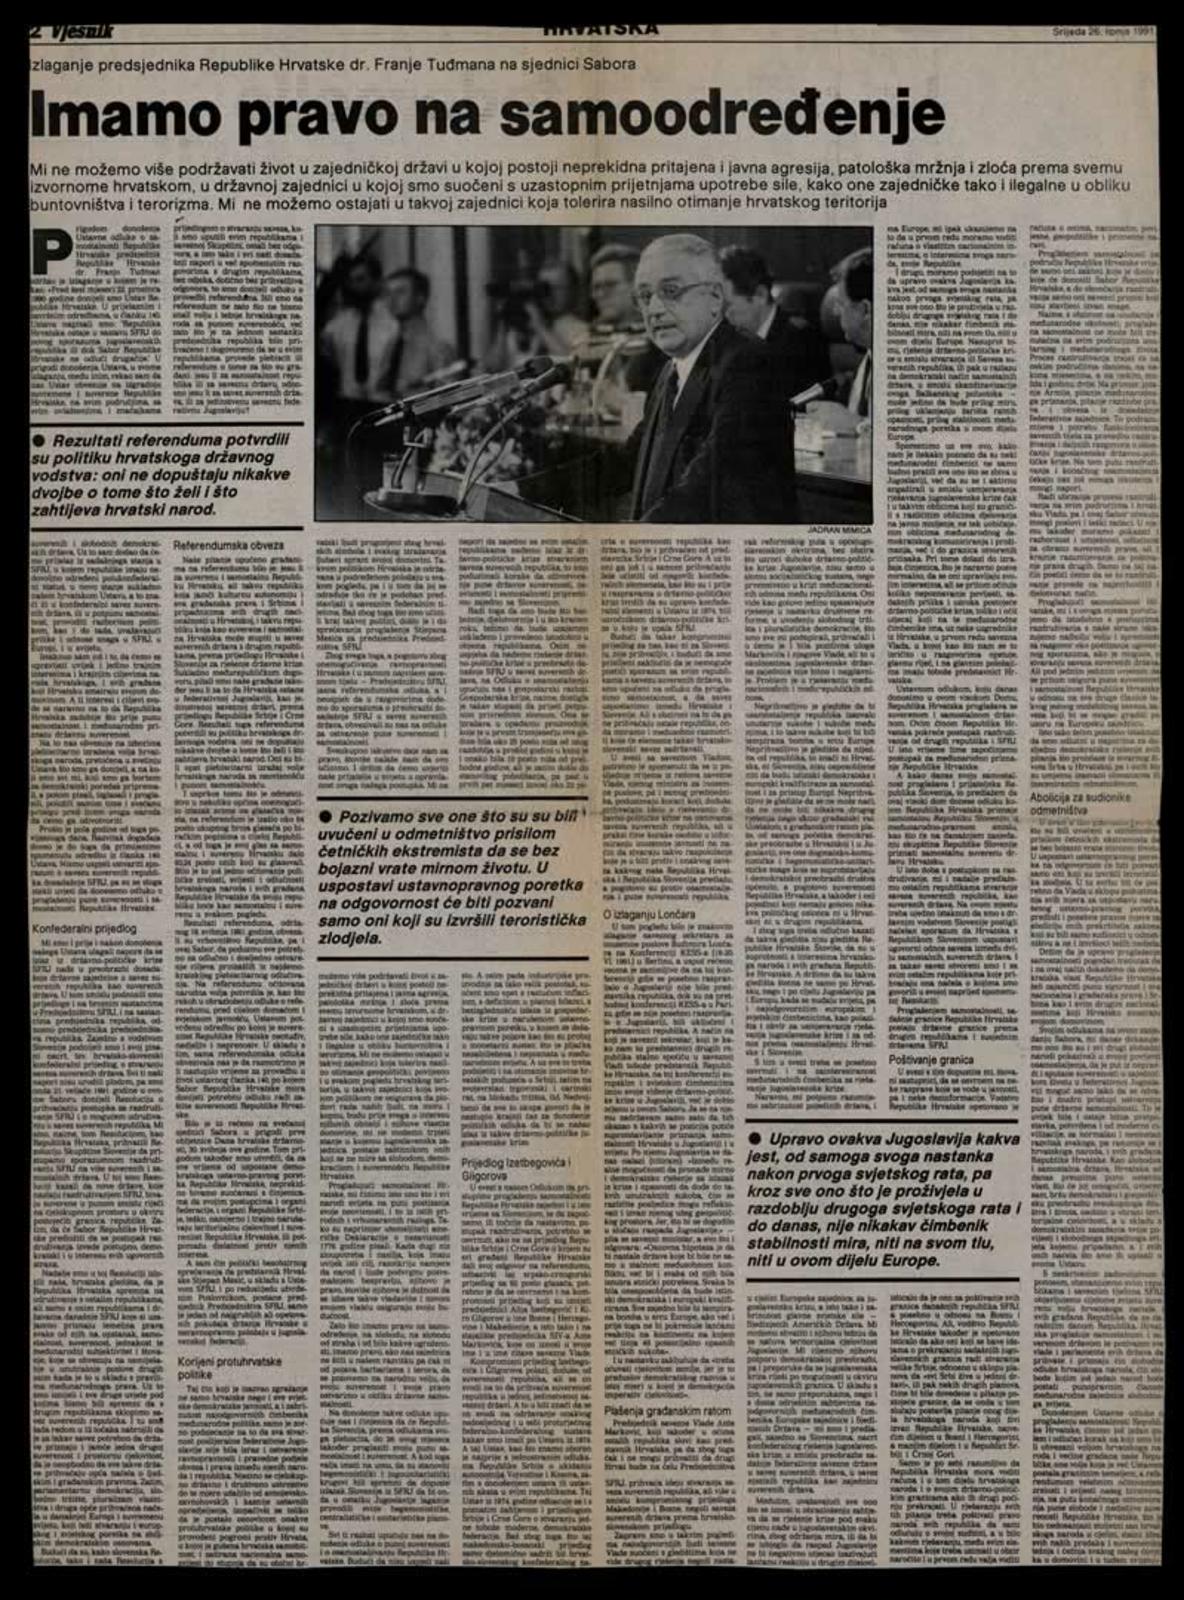 <b>Izlaganje predsjednika RH Franje Tuđmana na sjednici Sabora 25. lipnja 1991.</b>, članak iz <i>Vjesnika</i>, 26. lipnja 1991.
<br><br>
HR-HDA-2031. Vjesnik. Osobe, kut. 792
